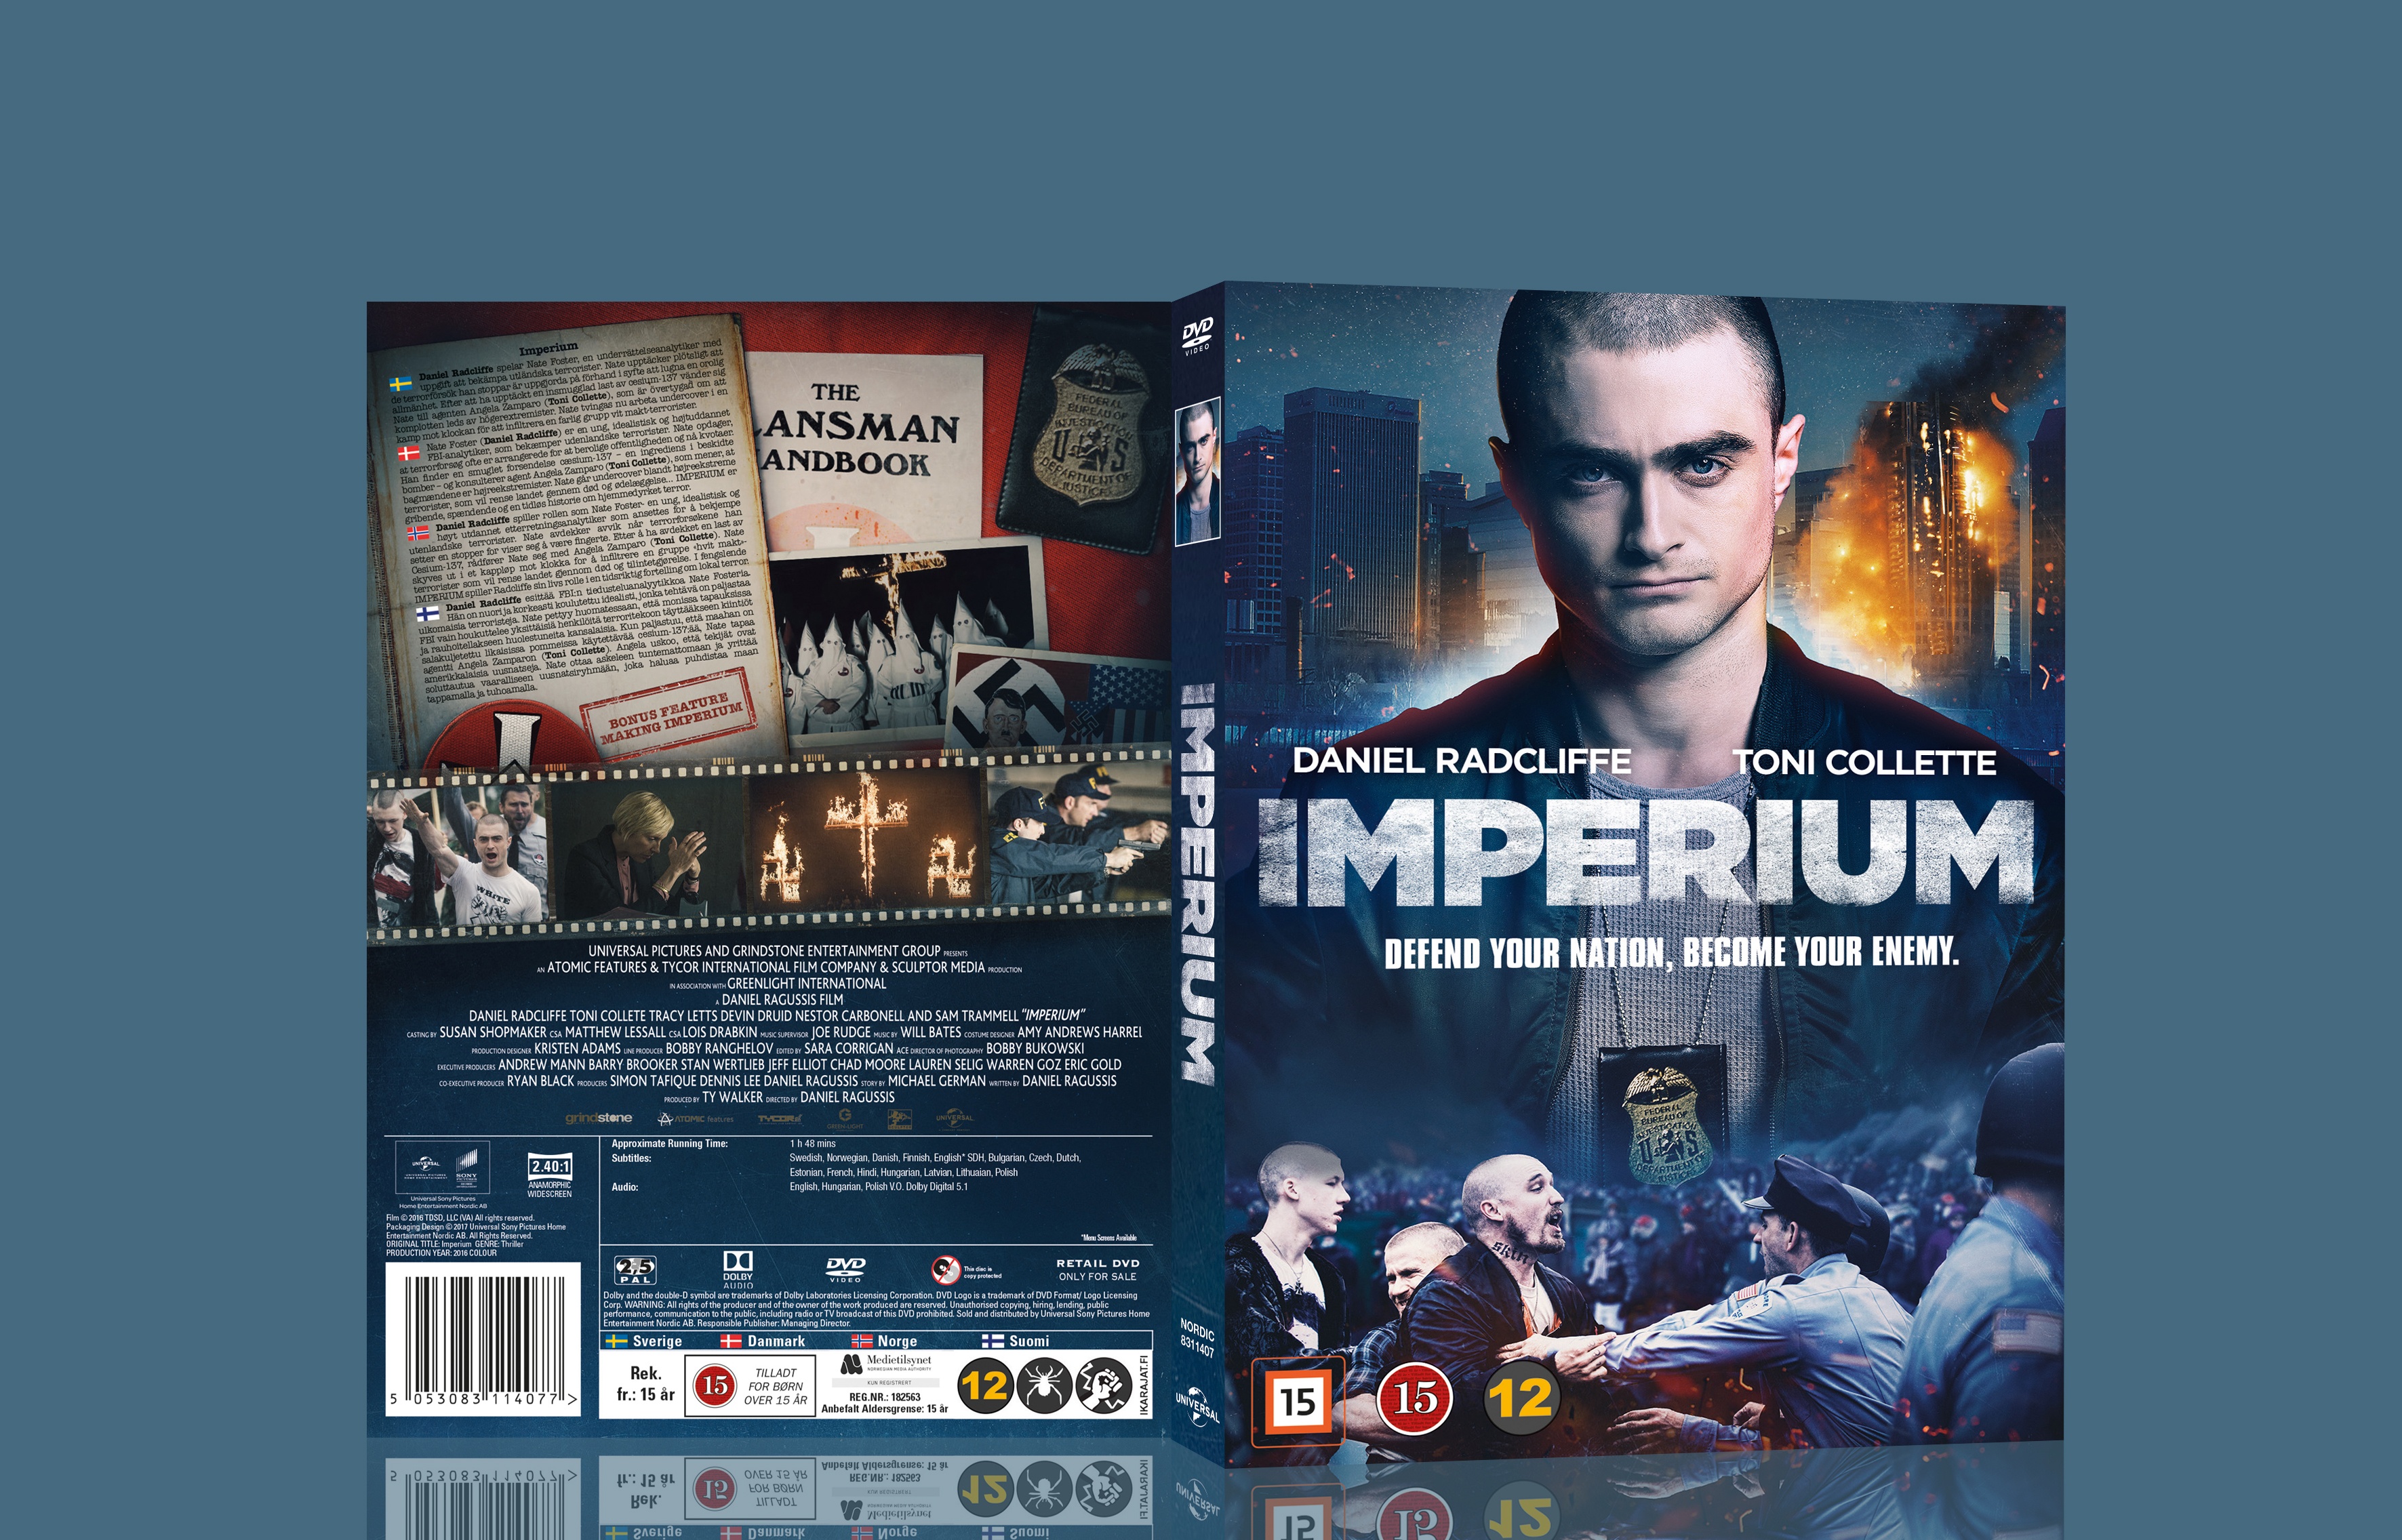 Imperium box cover